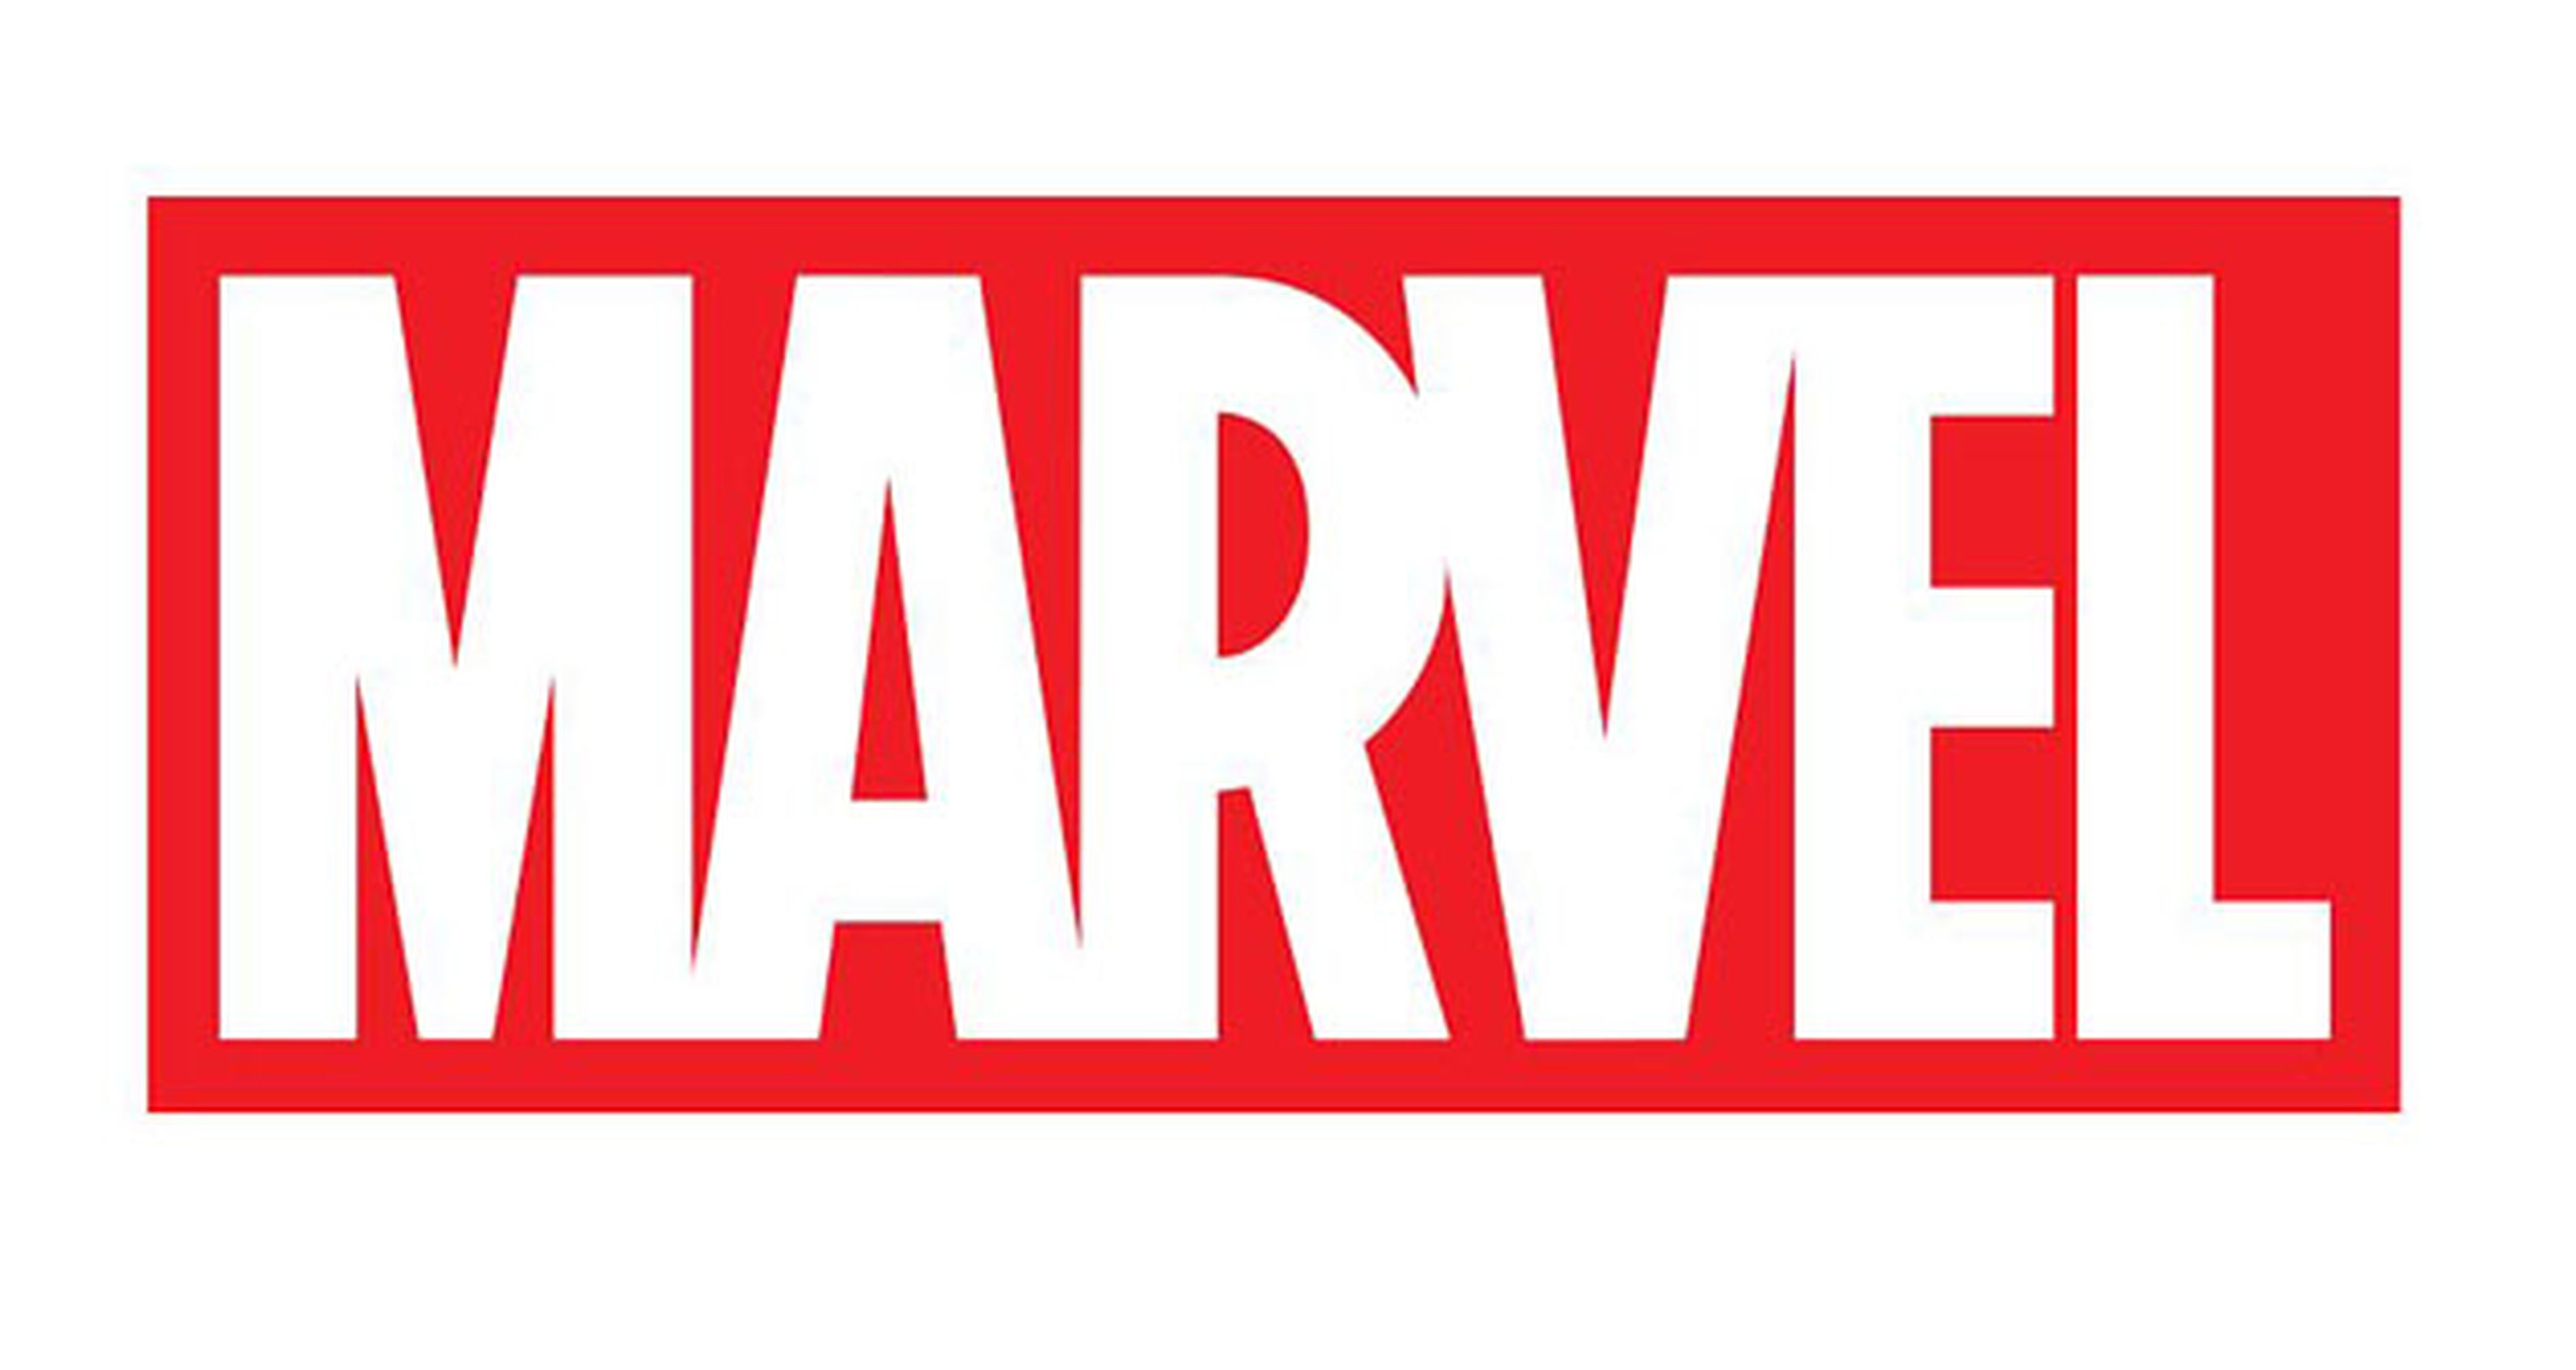 El Universo Marvel será completamente nuevo y diferente tras Secret Wars